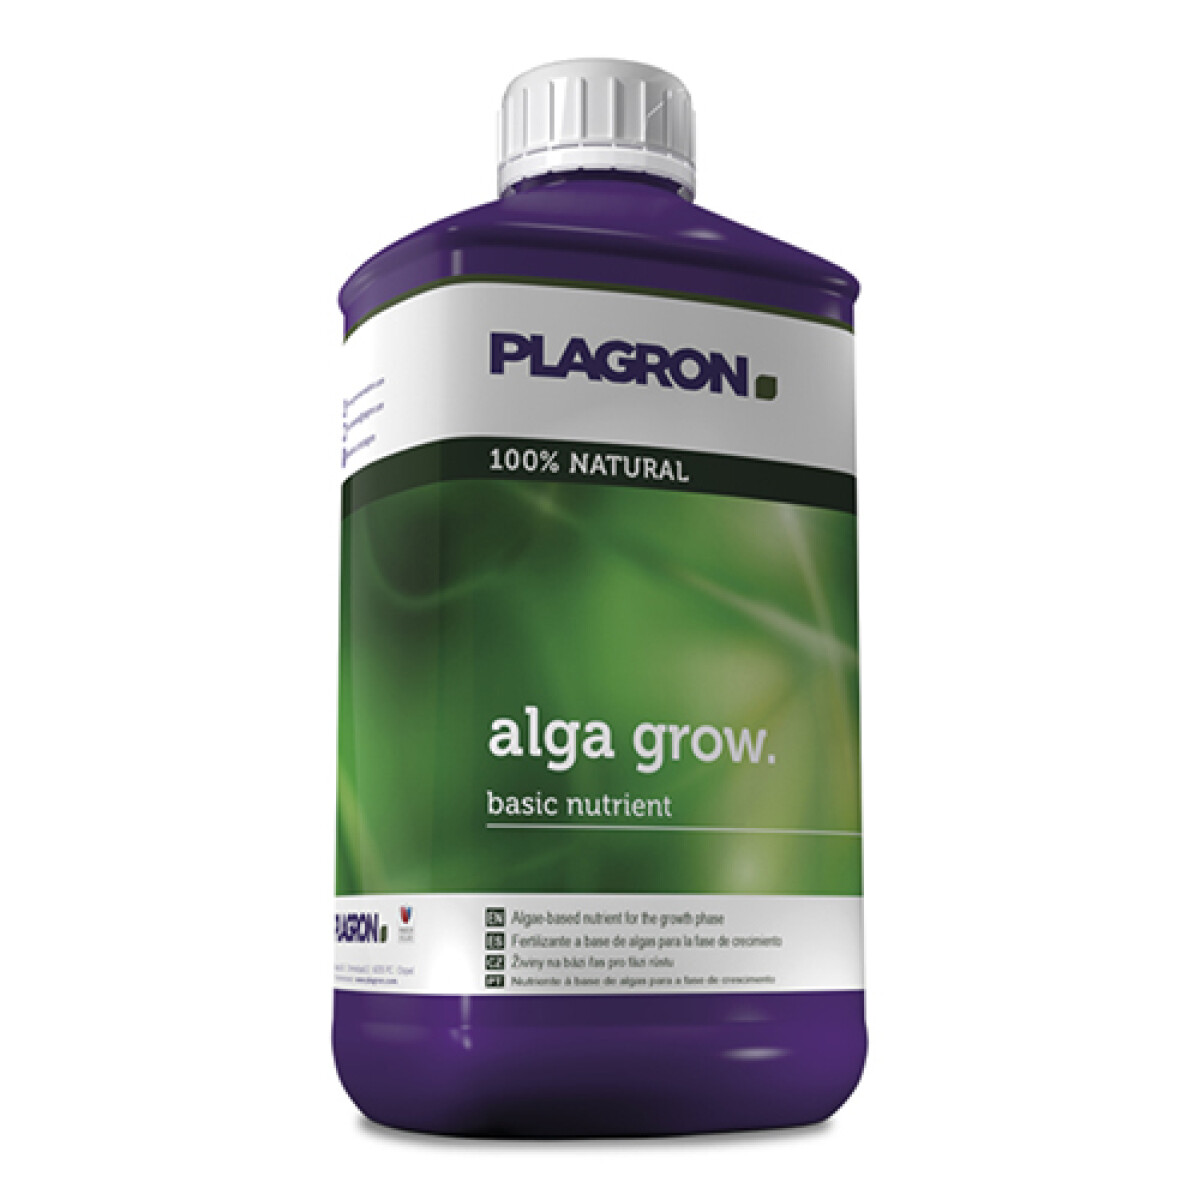 ALGA GROW PLAGRON - 250ML 